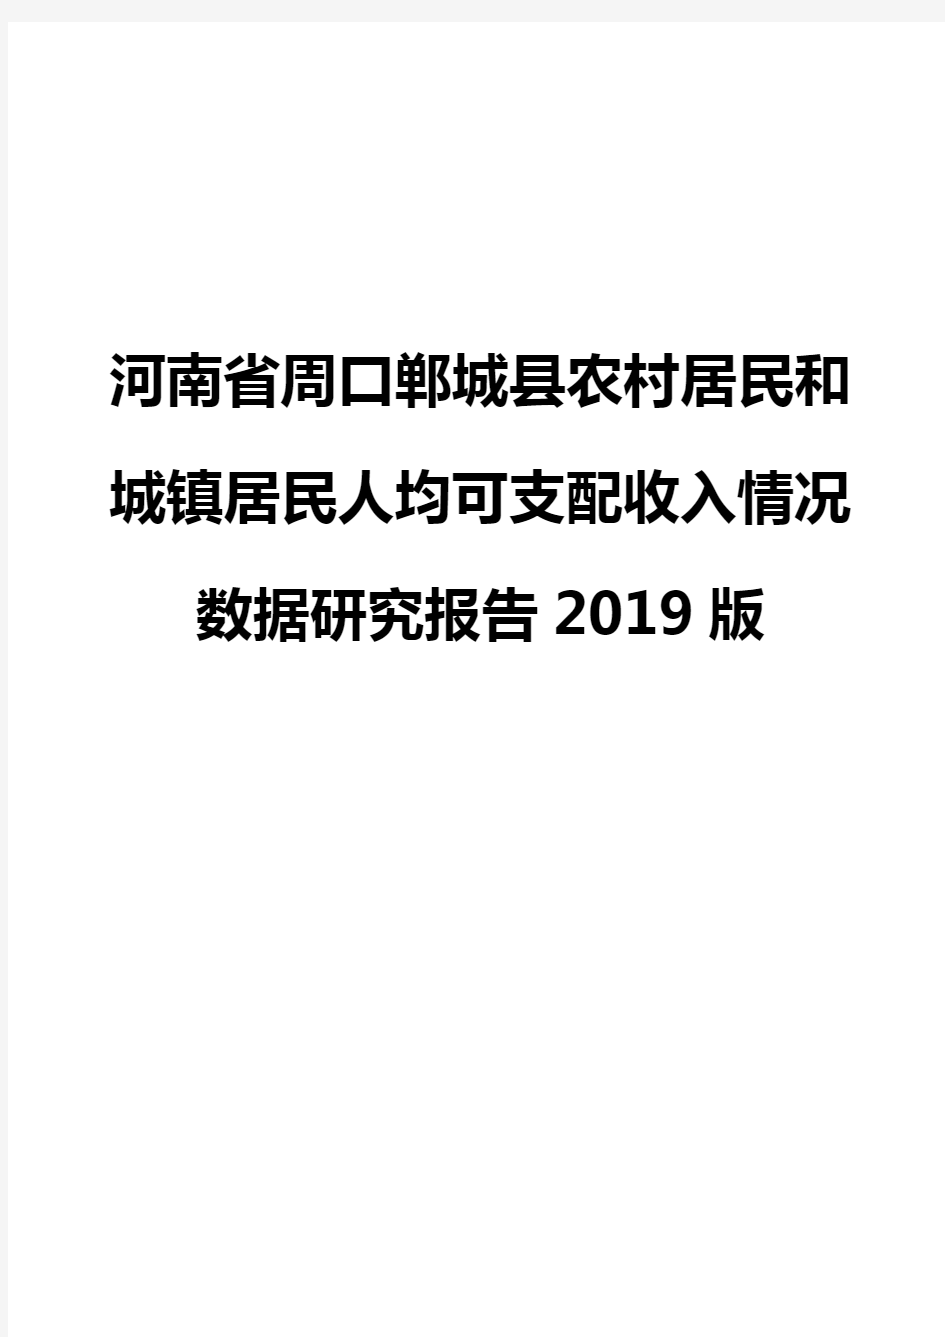 河南省周口郸城县农村居民和城镇居民人均可支配收入情况数据研究报告2019版